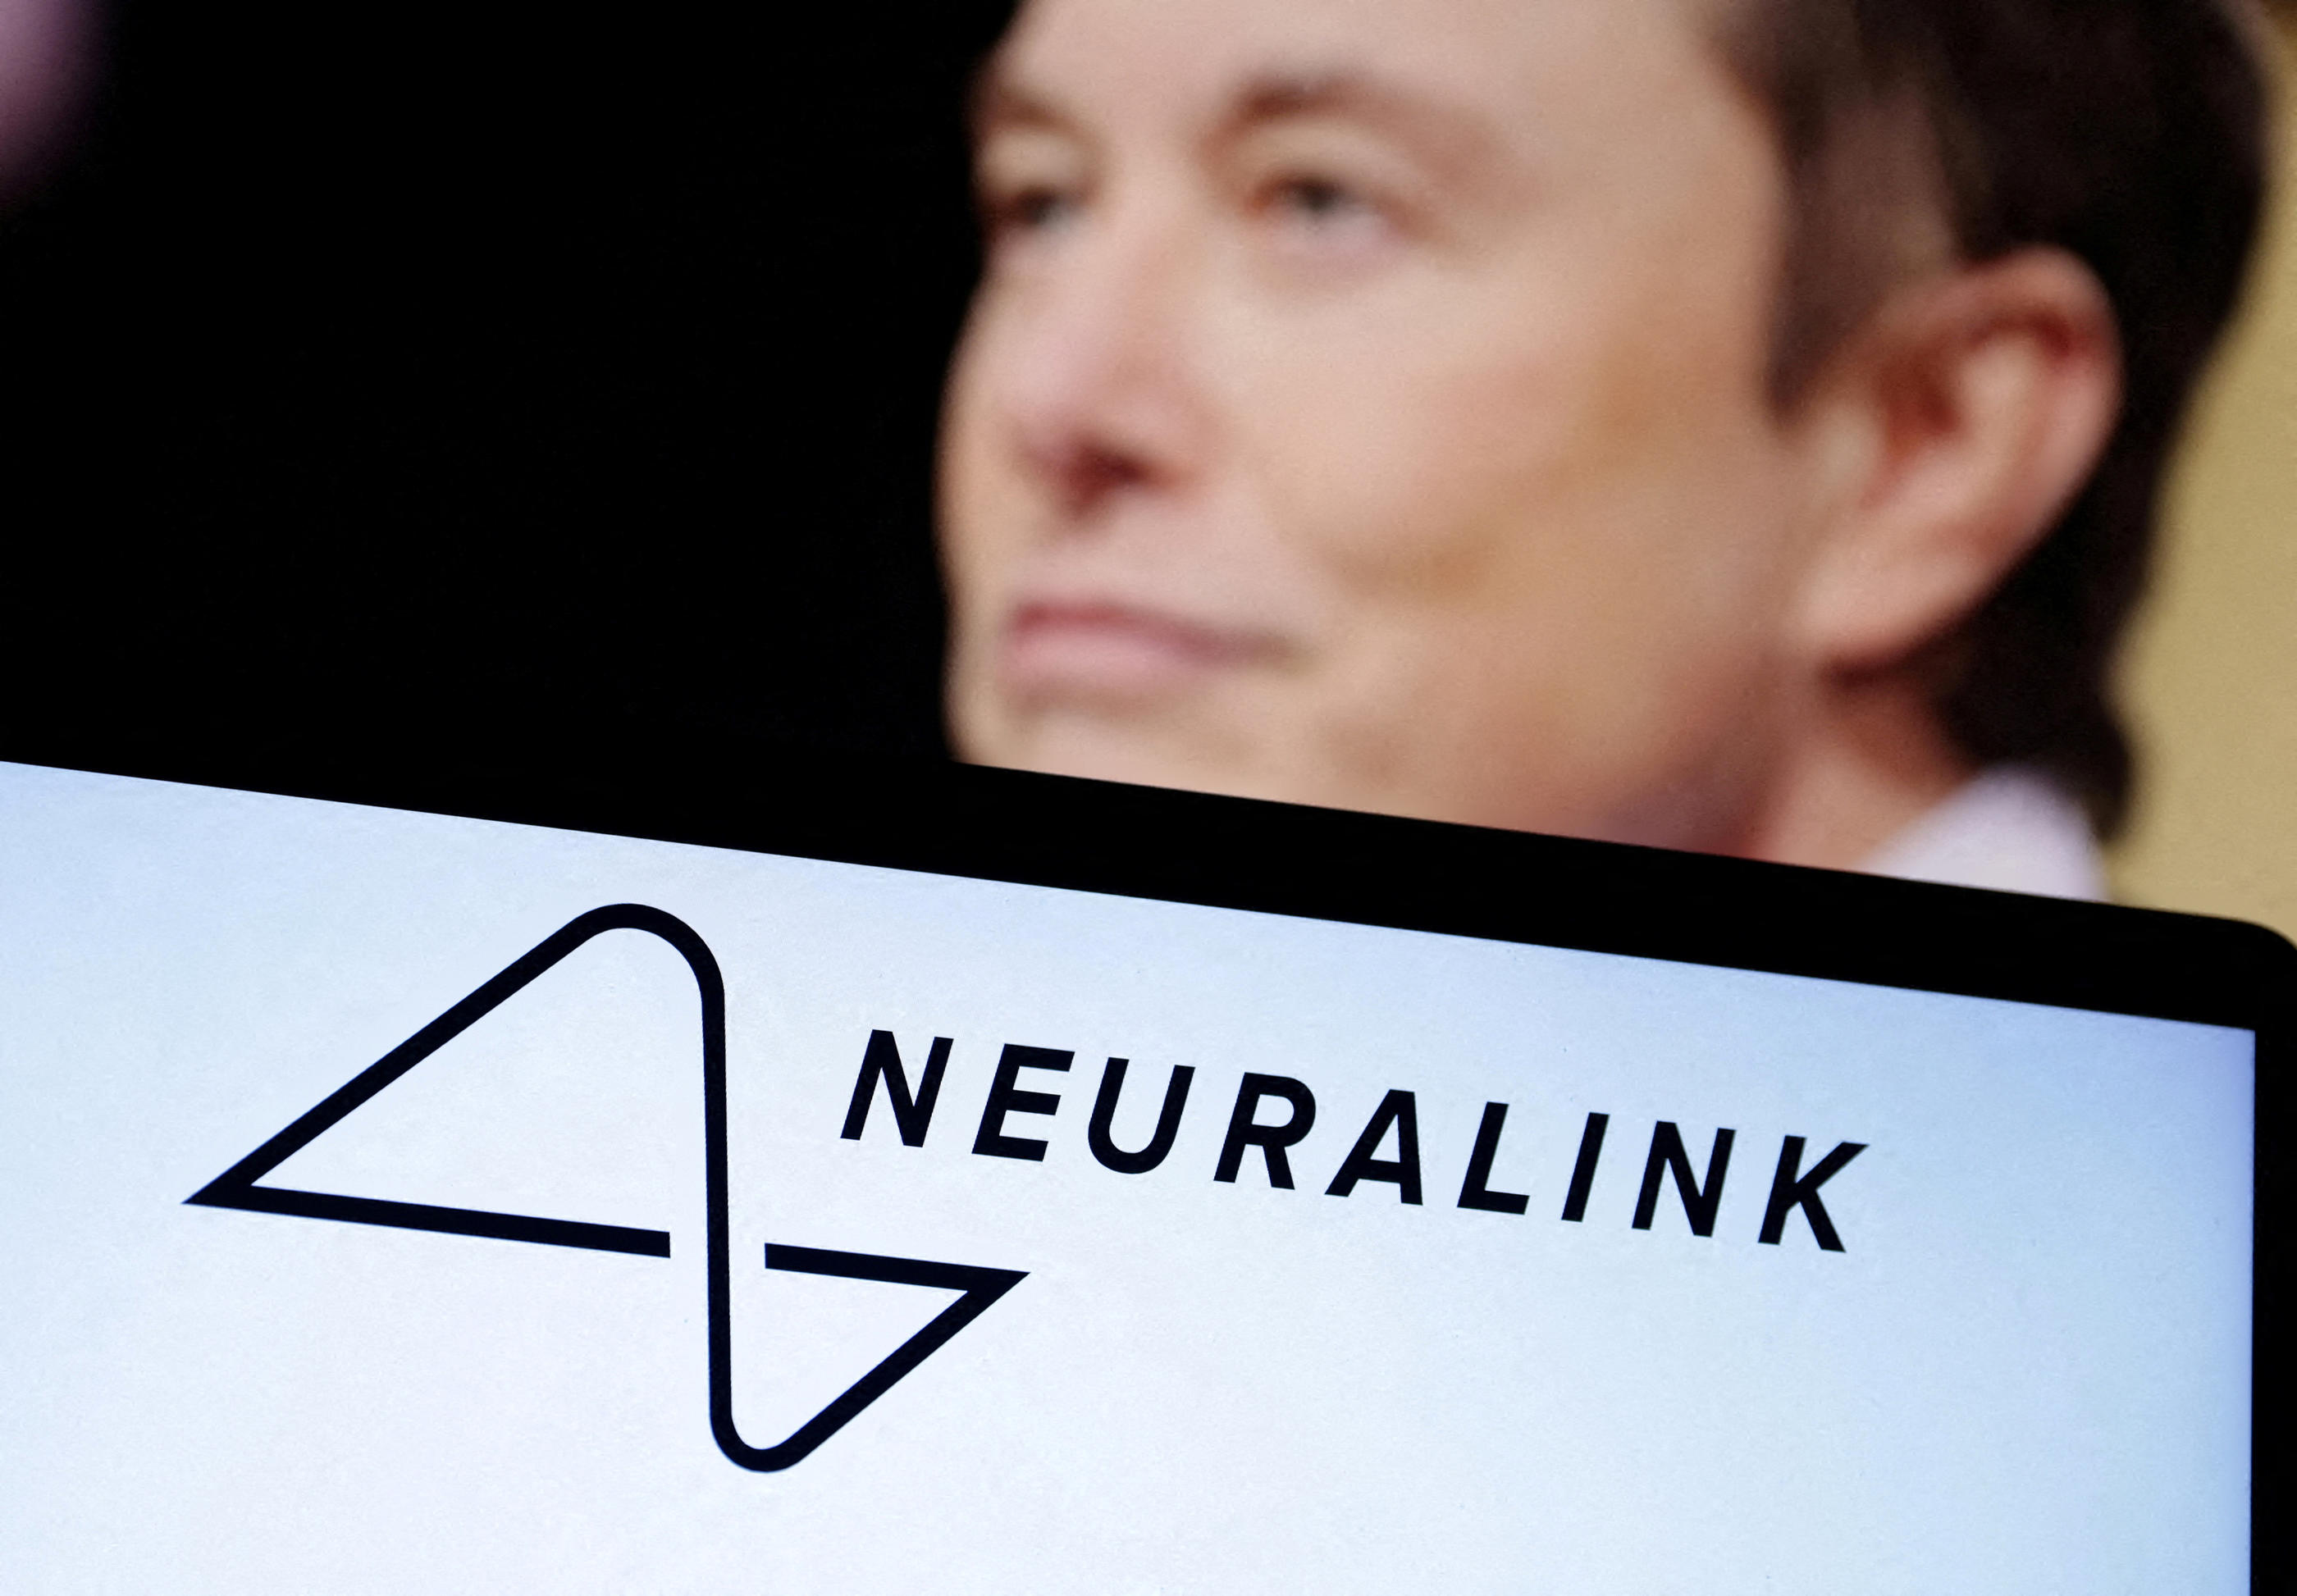 Ce lundi, le milliardaire Elon Musk a annoncé la pose d'un premier implant sur le cerveau d'un patient, par son entreprise Neuralink. Reuters/DADO RUVIC